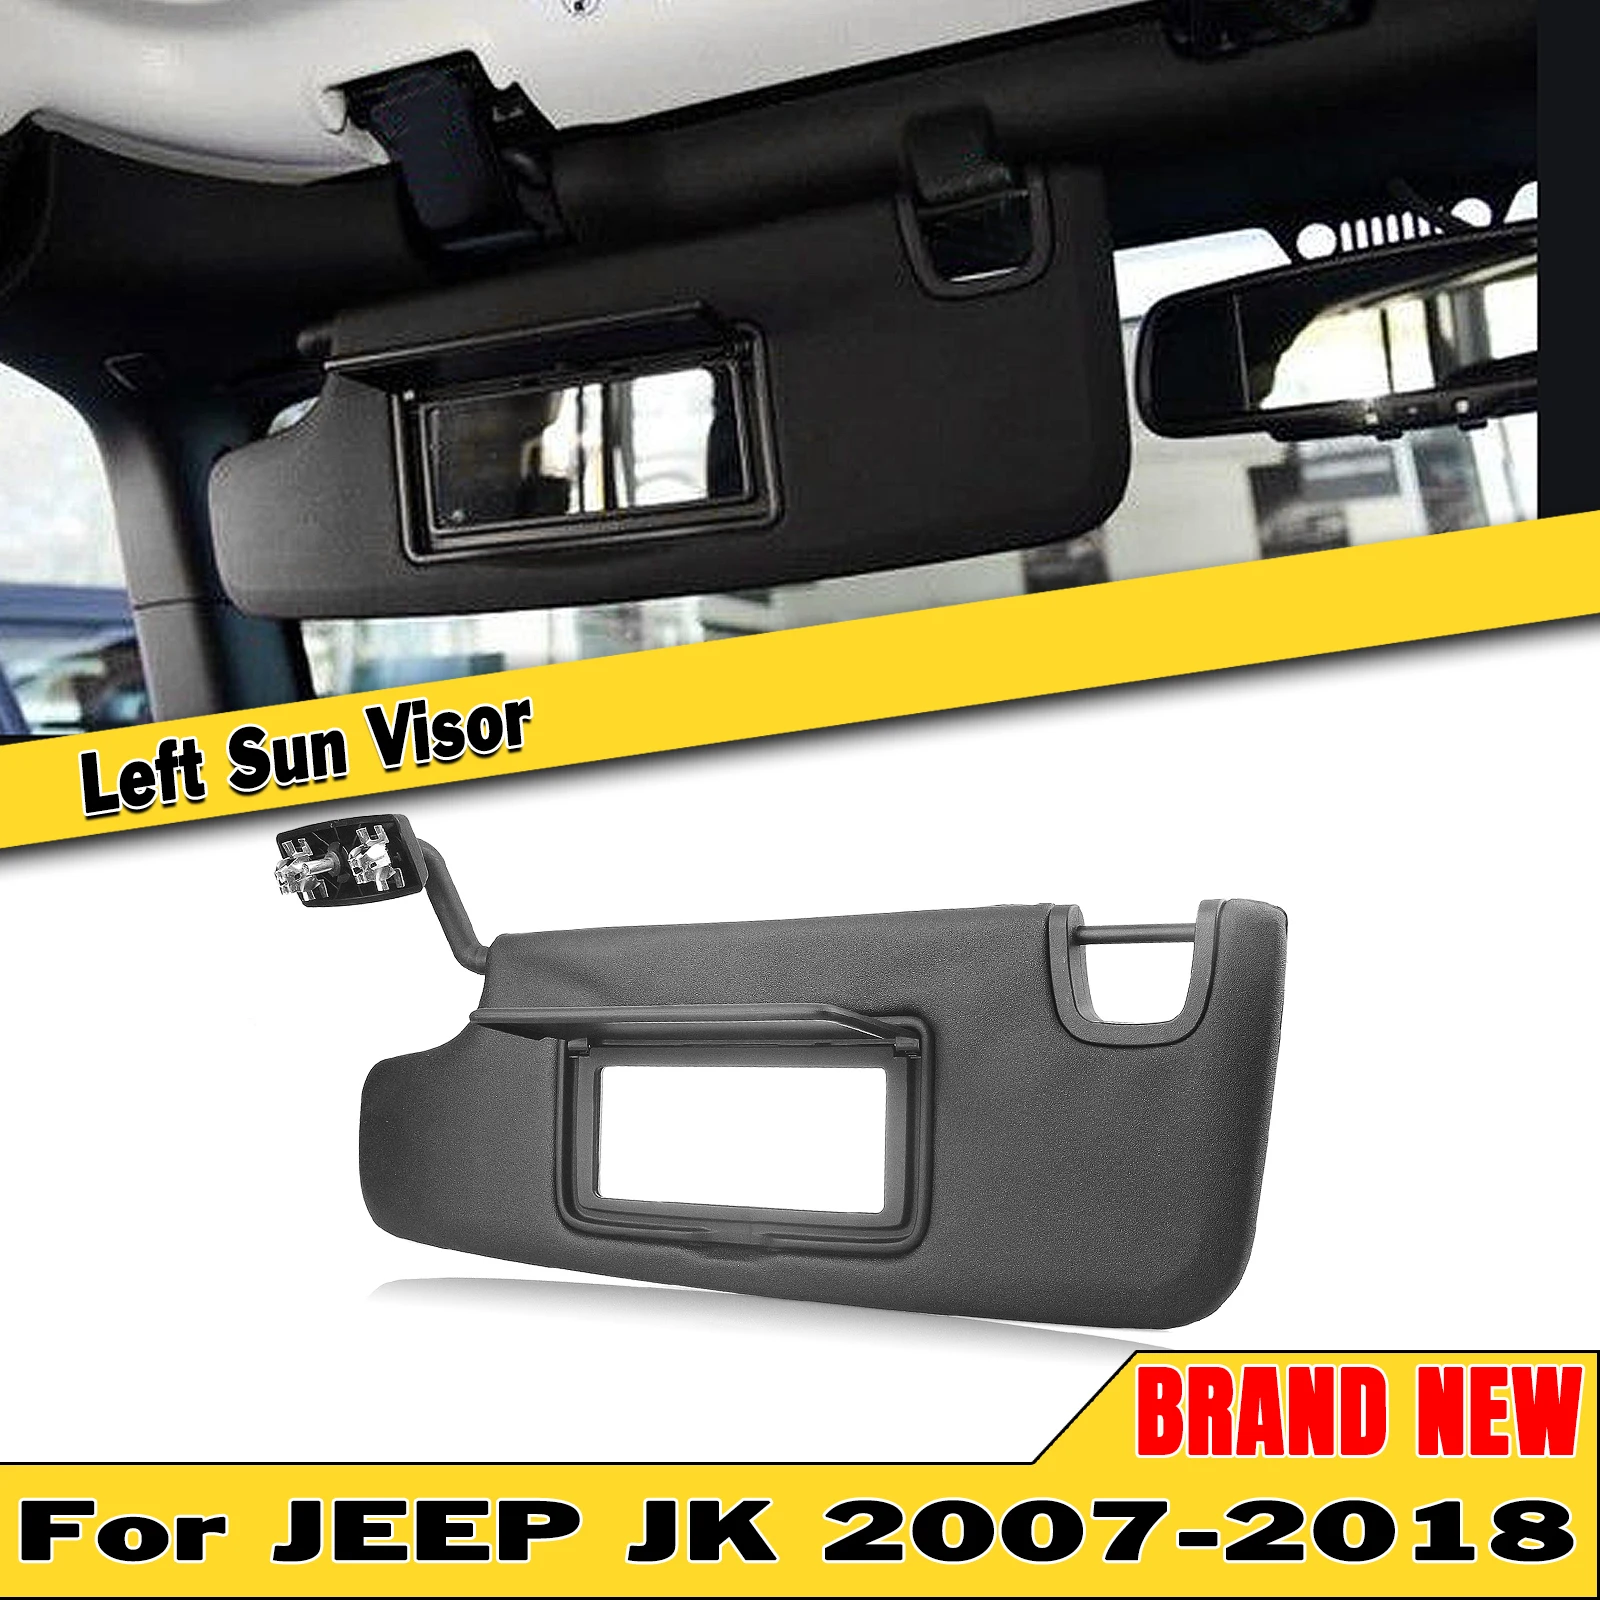 

Sun Visor Shade For Jeep Wrangler JK 2007 2008 2009 2010 2011 2012-2018 Black Left Driver Front Sunvisor Sunshade Shield Blind